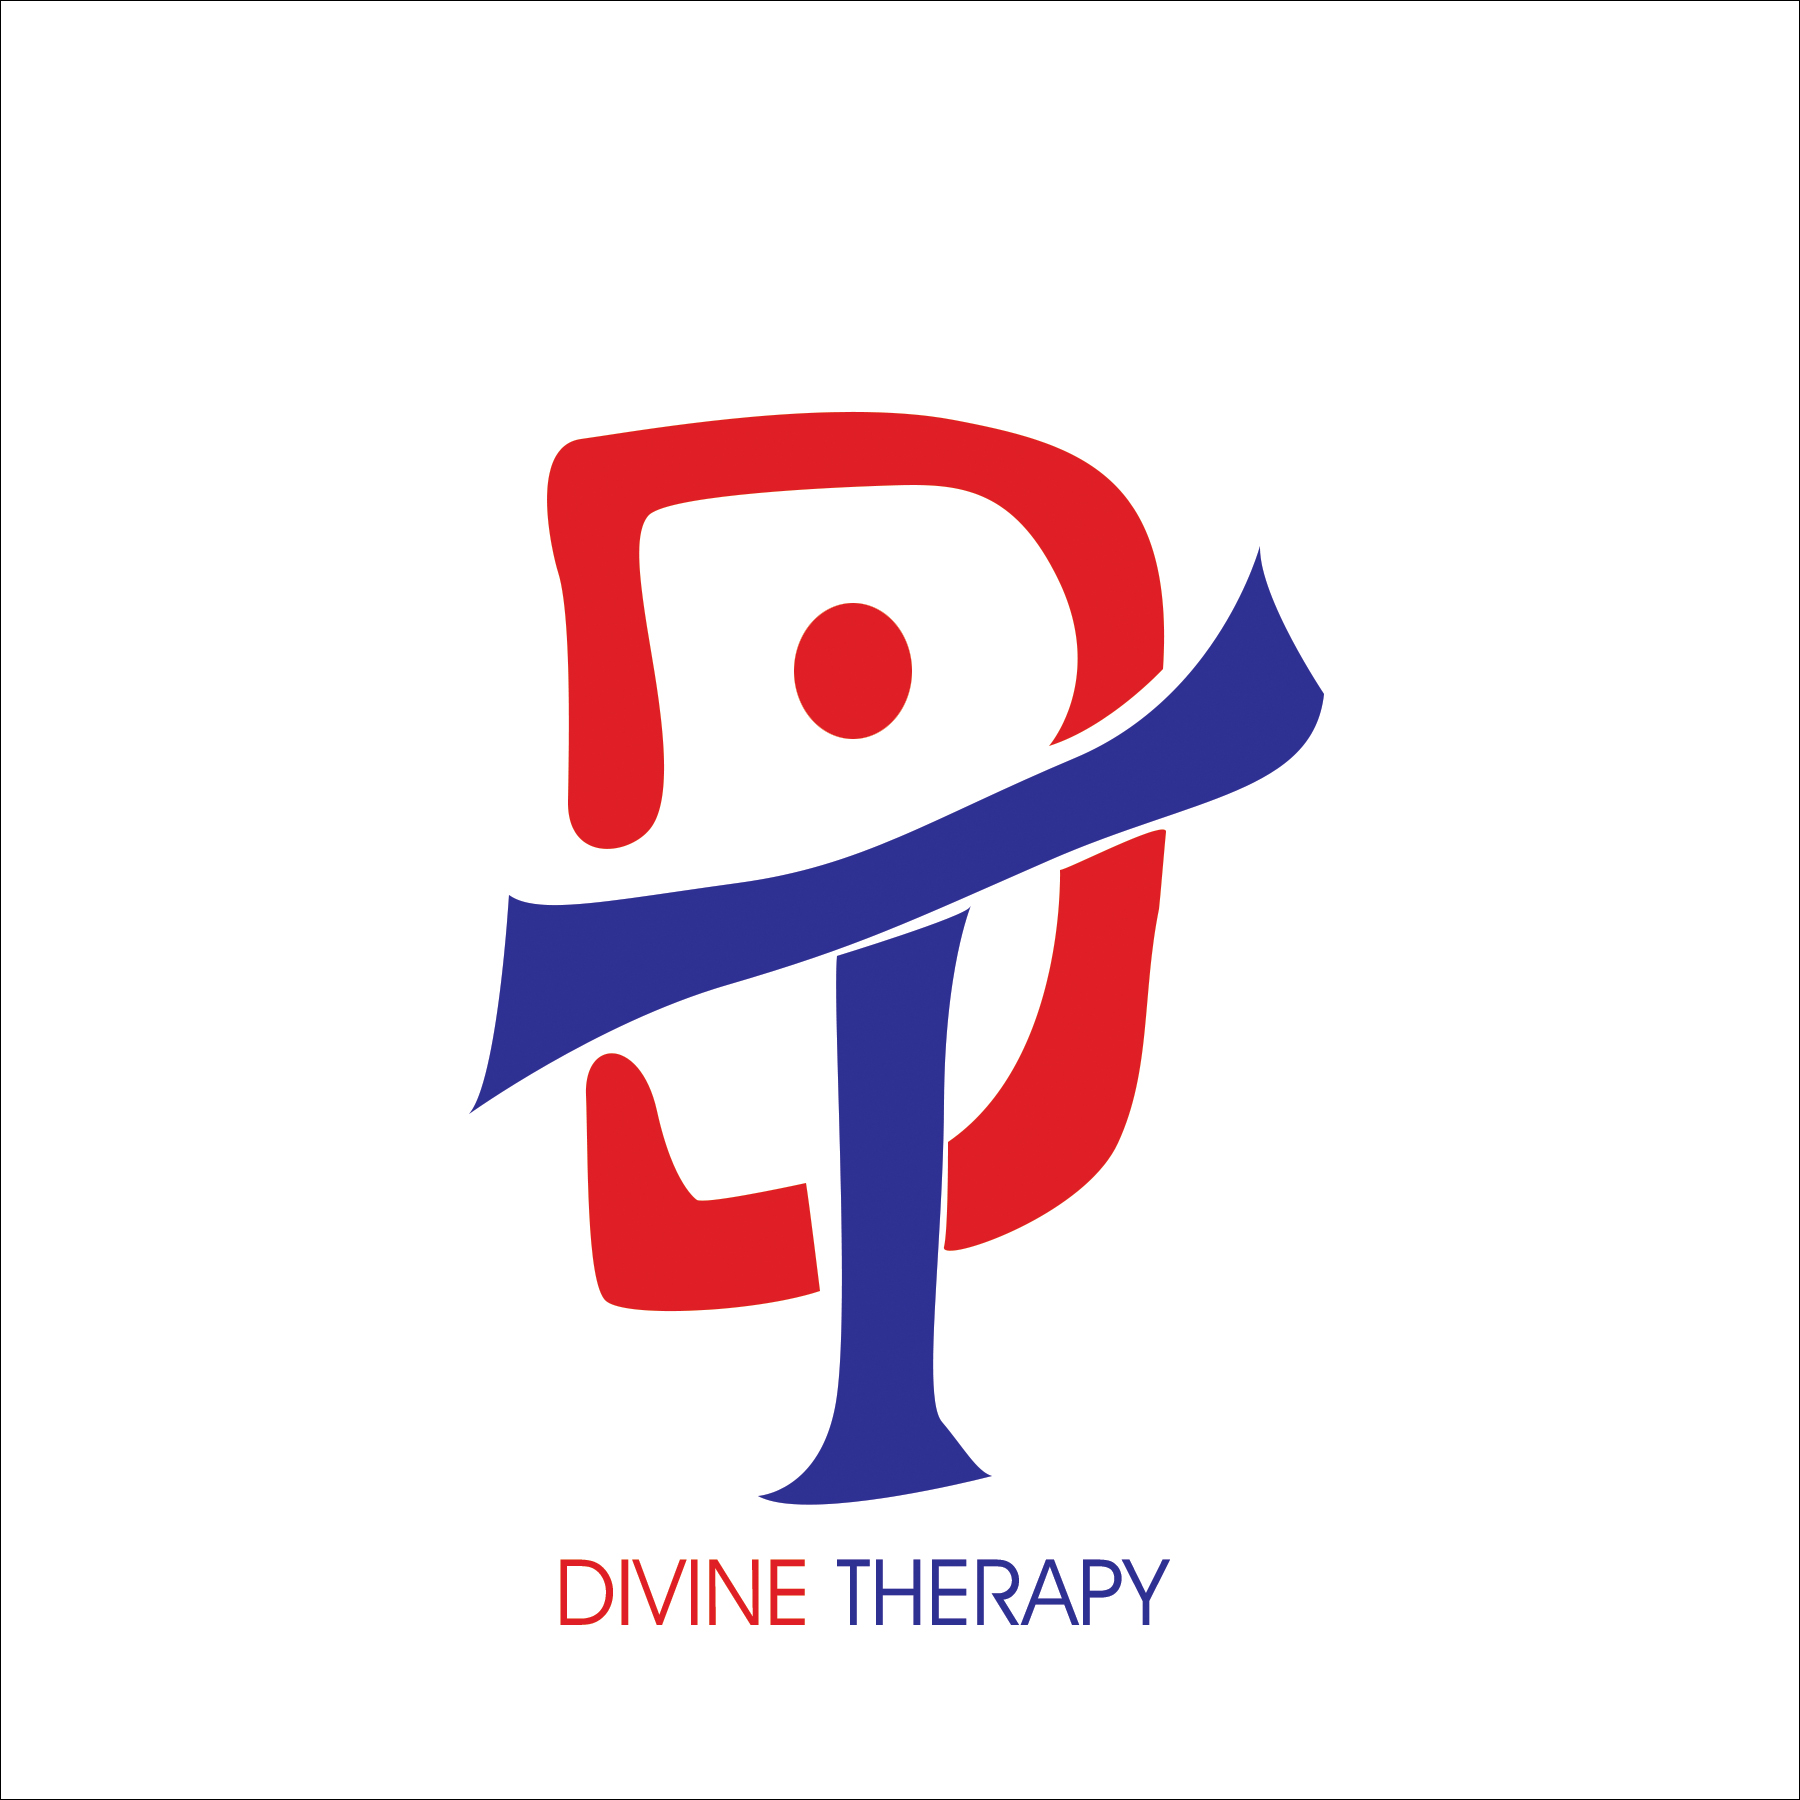 Divine Therapy Inc